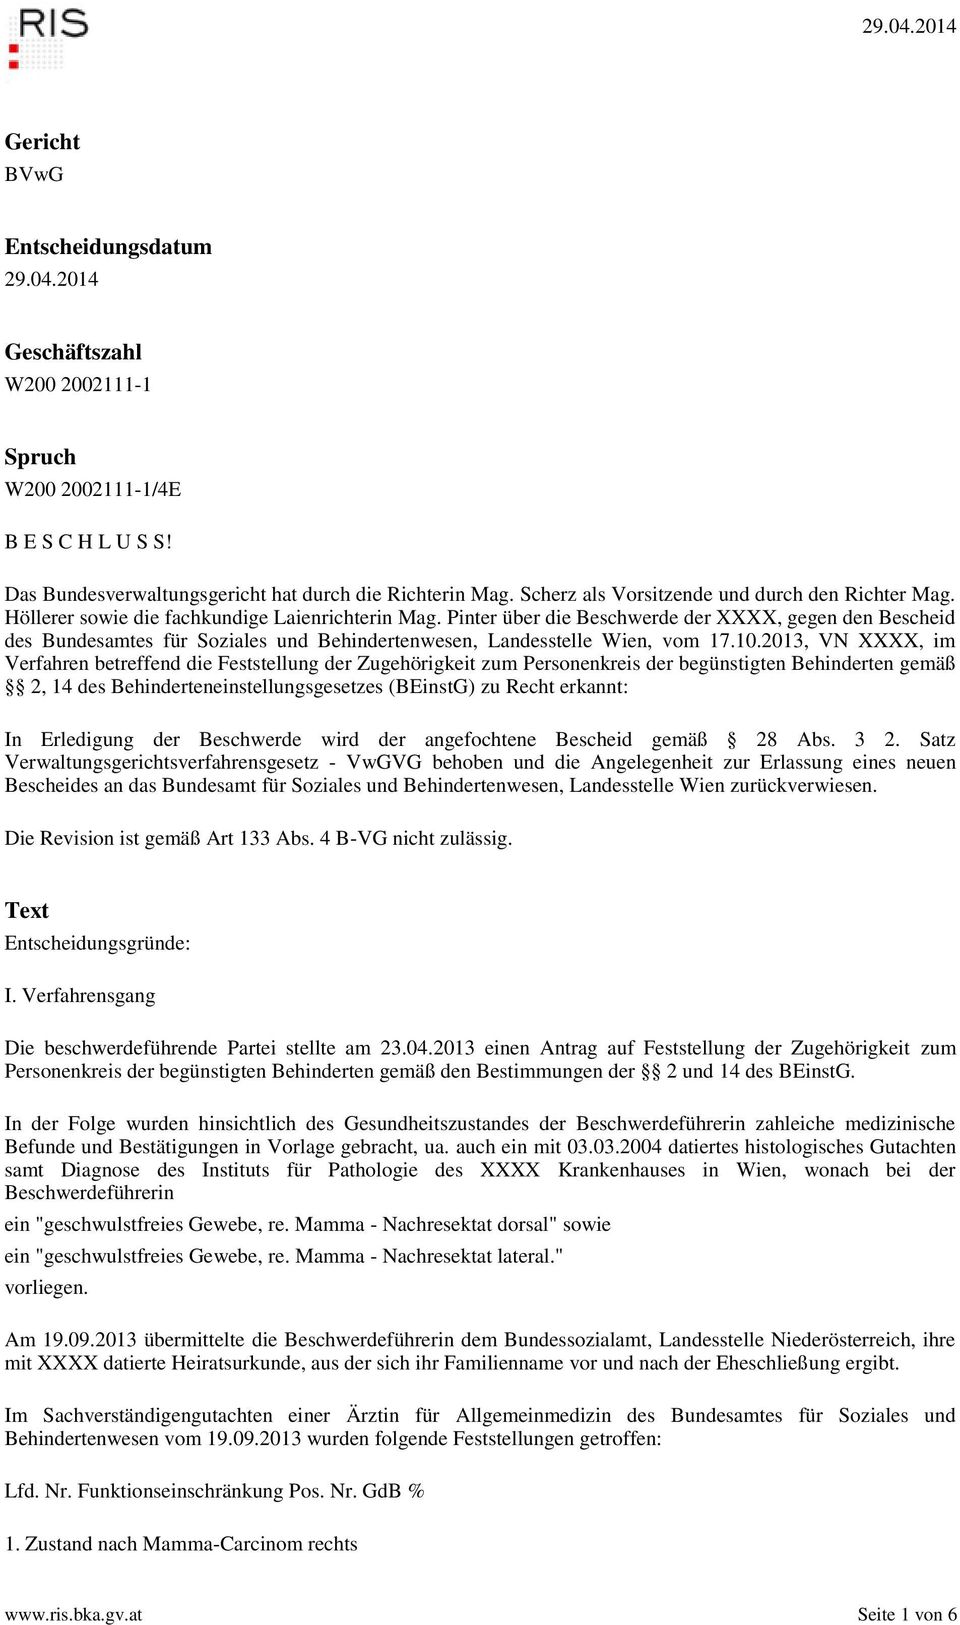 Pinter über die Beschwerde der XXXX, gegen den Bescheid des Bundesamtes für Soziales und Behindertenwesen, Landesstelle Wien, vom 17.10.